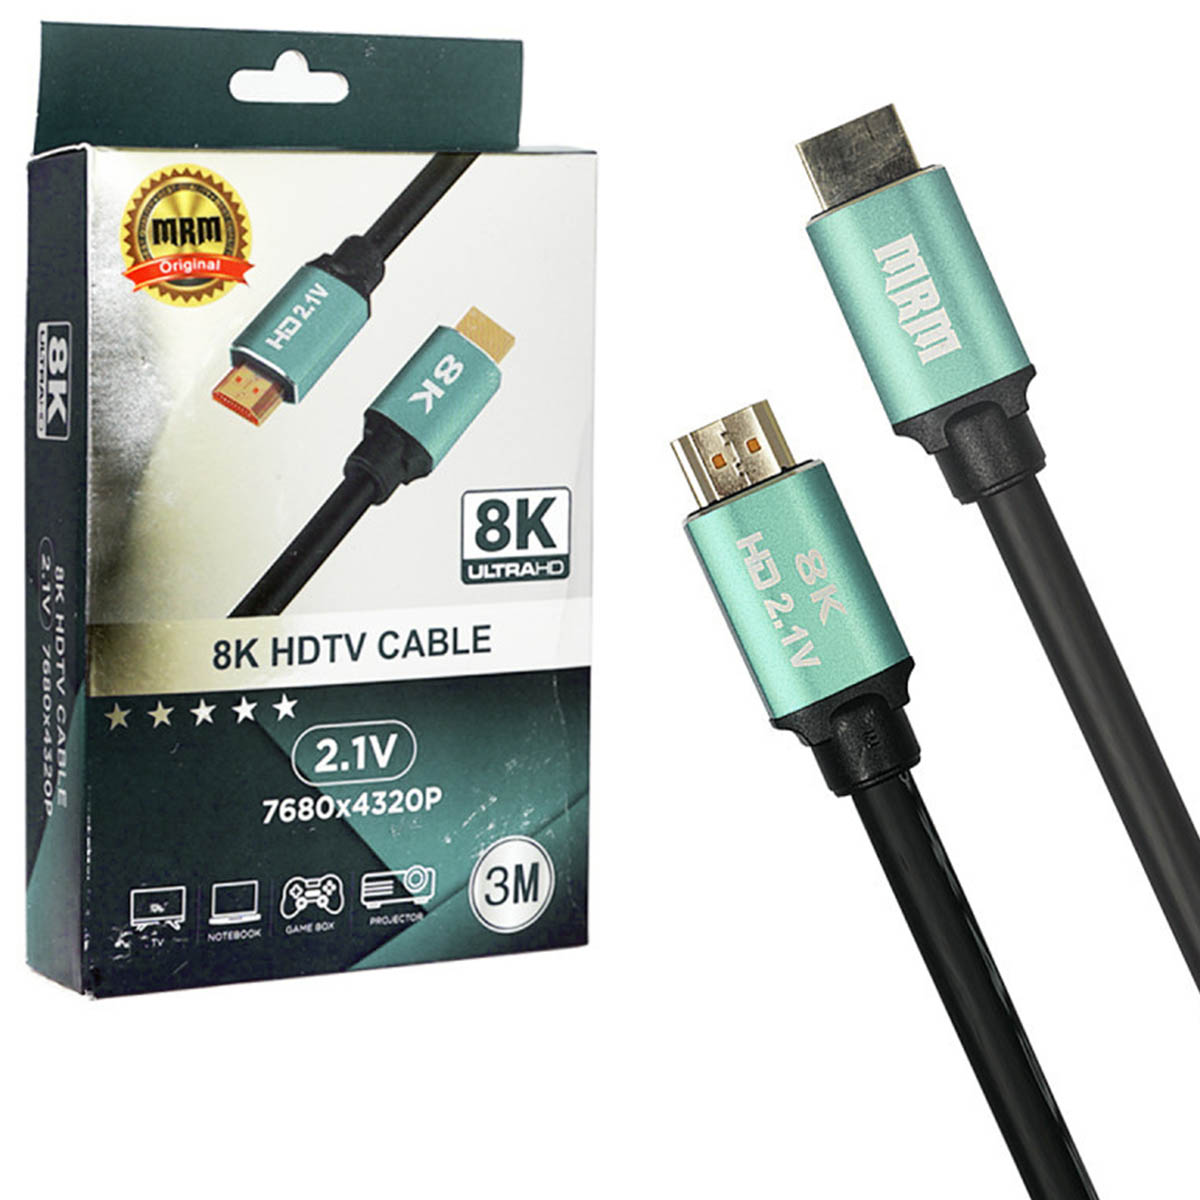 Цифровой кабель HDMI, для подключения ПК, Apple TV, монитора, игровых приставок, 8K Ultra HD, длина 3 метра, цвет черный